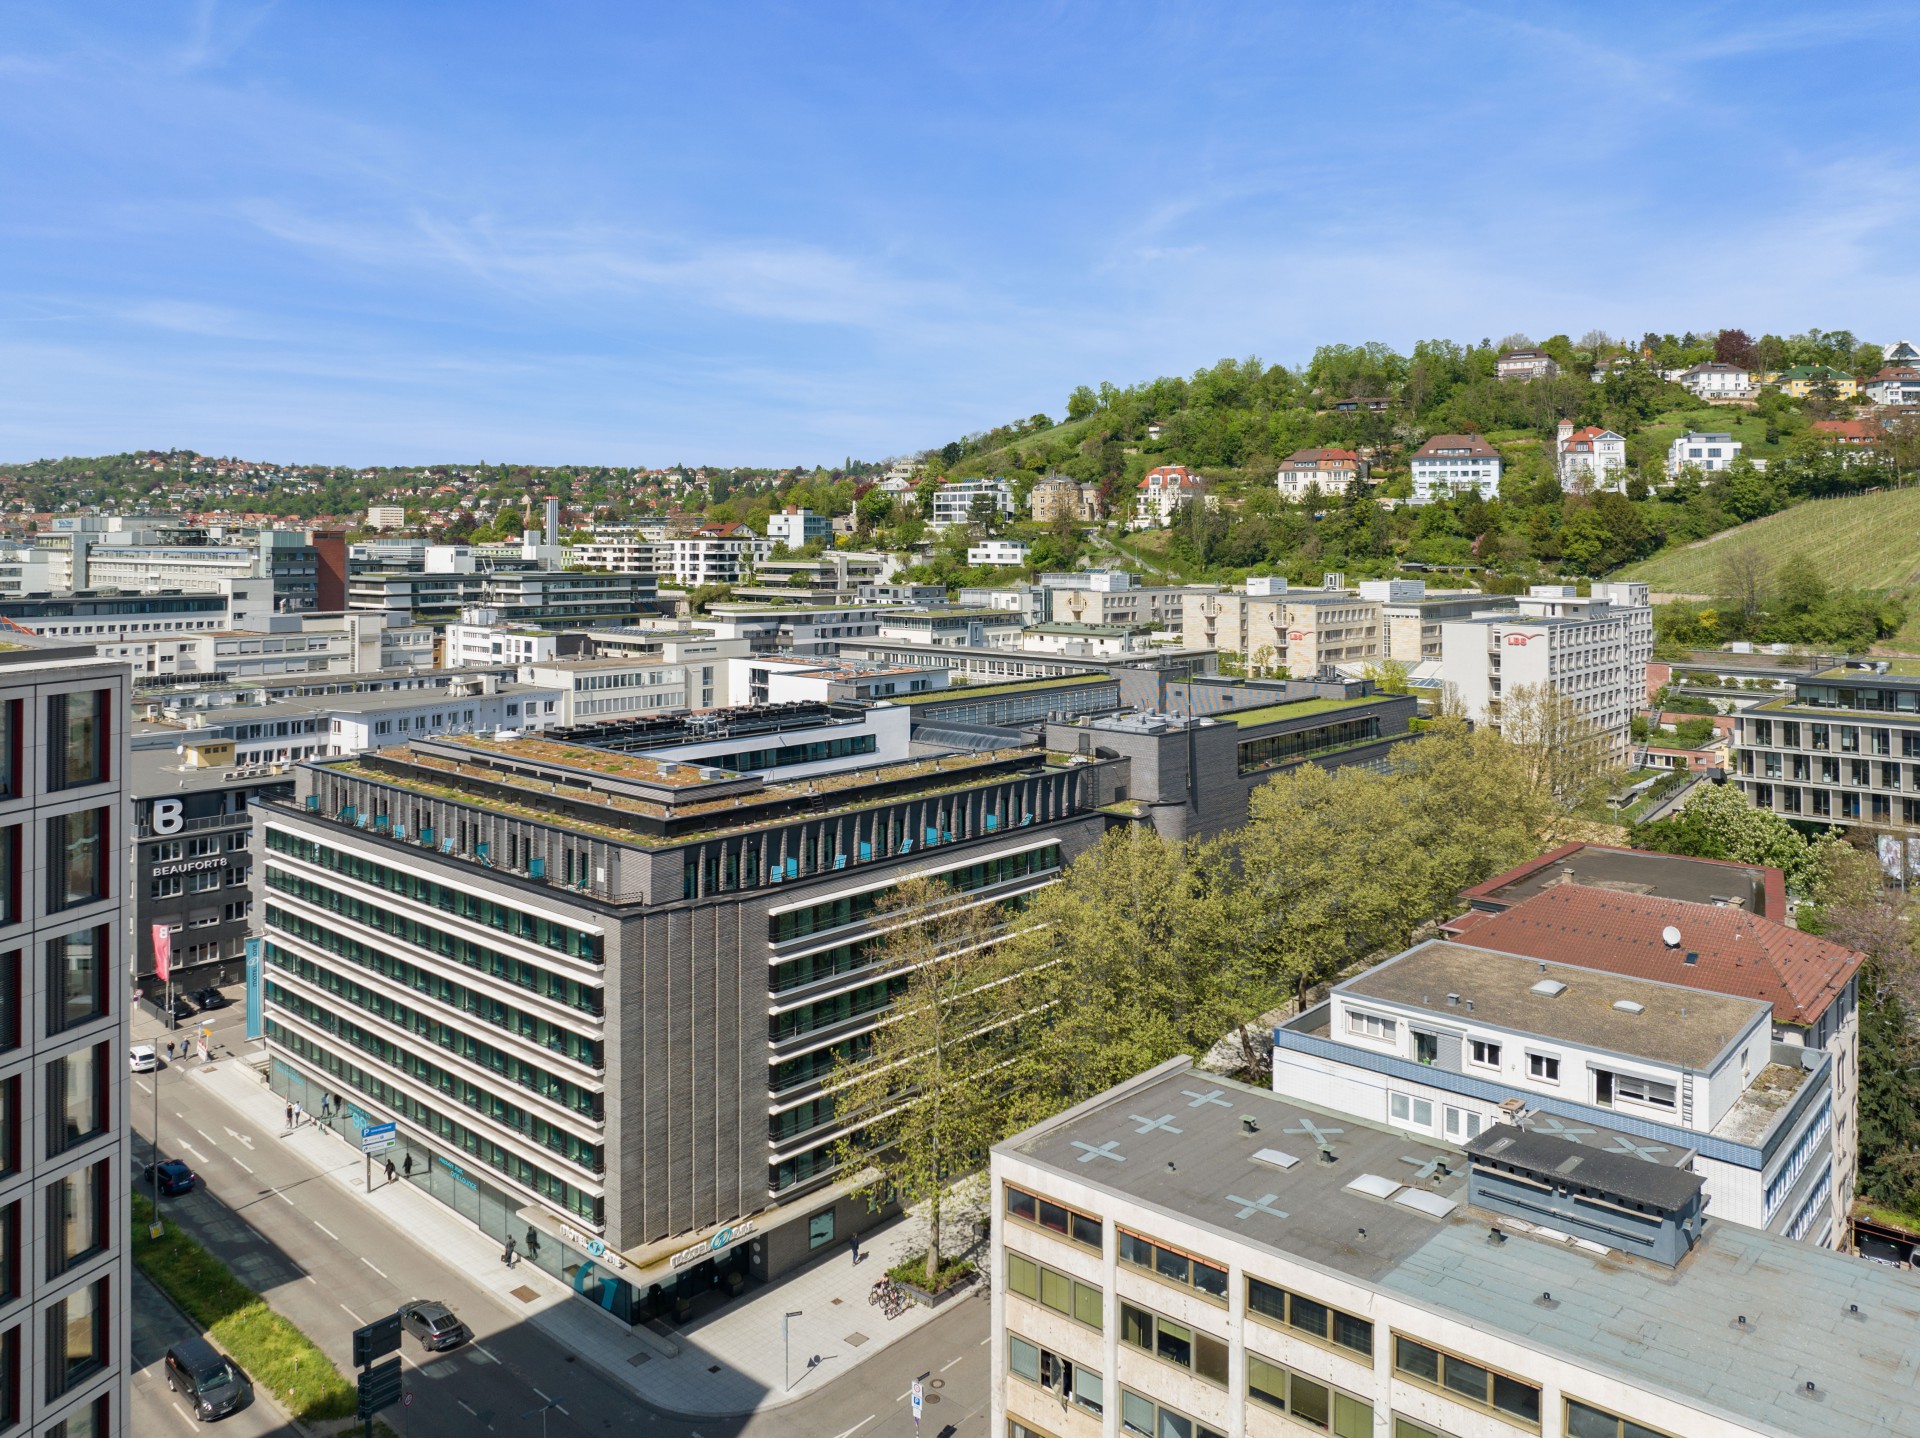 K32 - Hotel und Umbau Bürogebäude Stuttgart